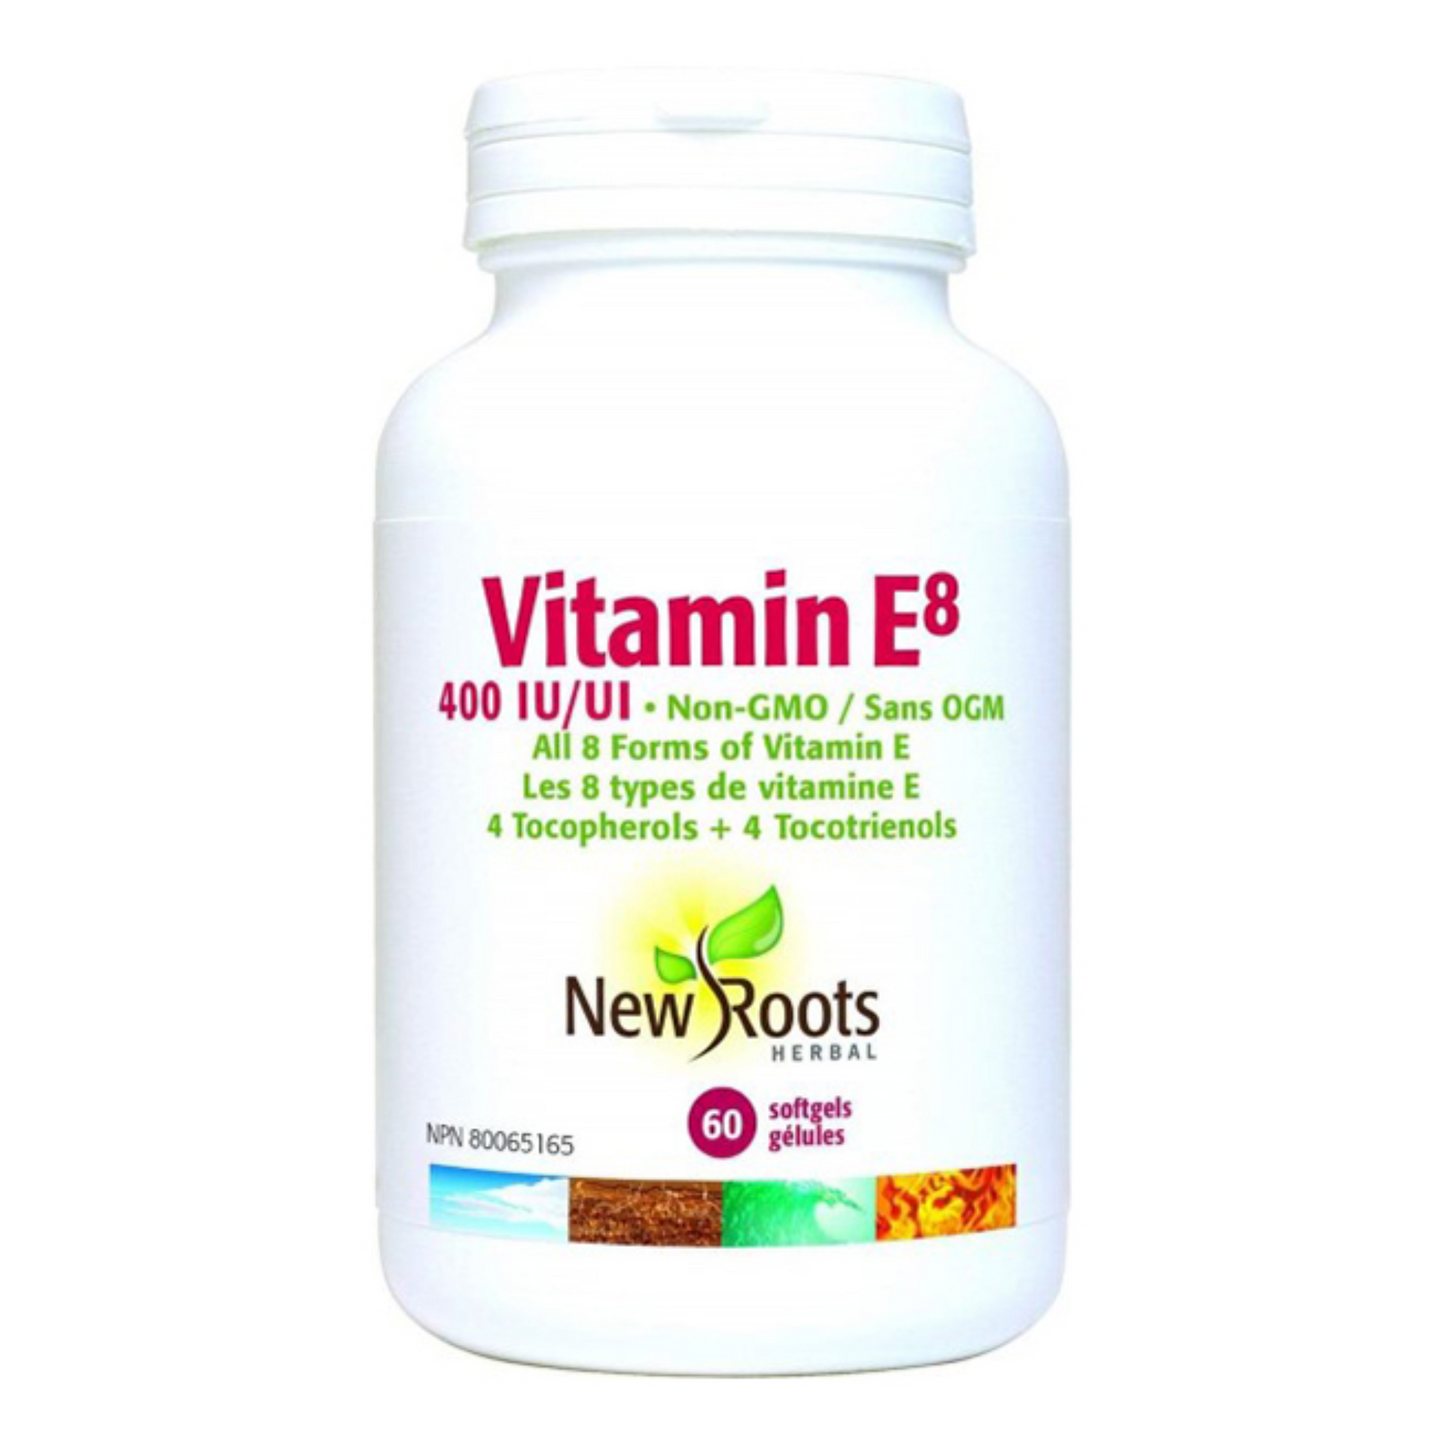 New Roots Vitamin E8 400iu 60softgels